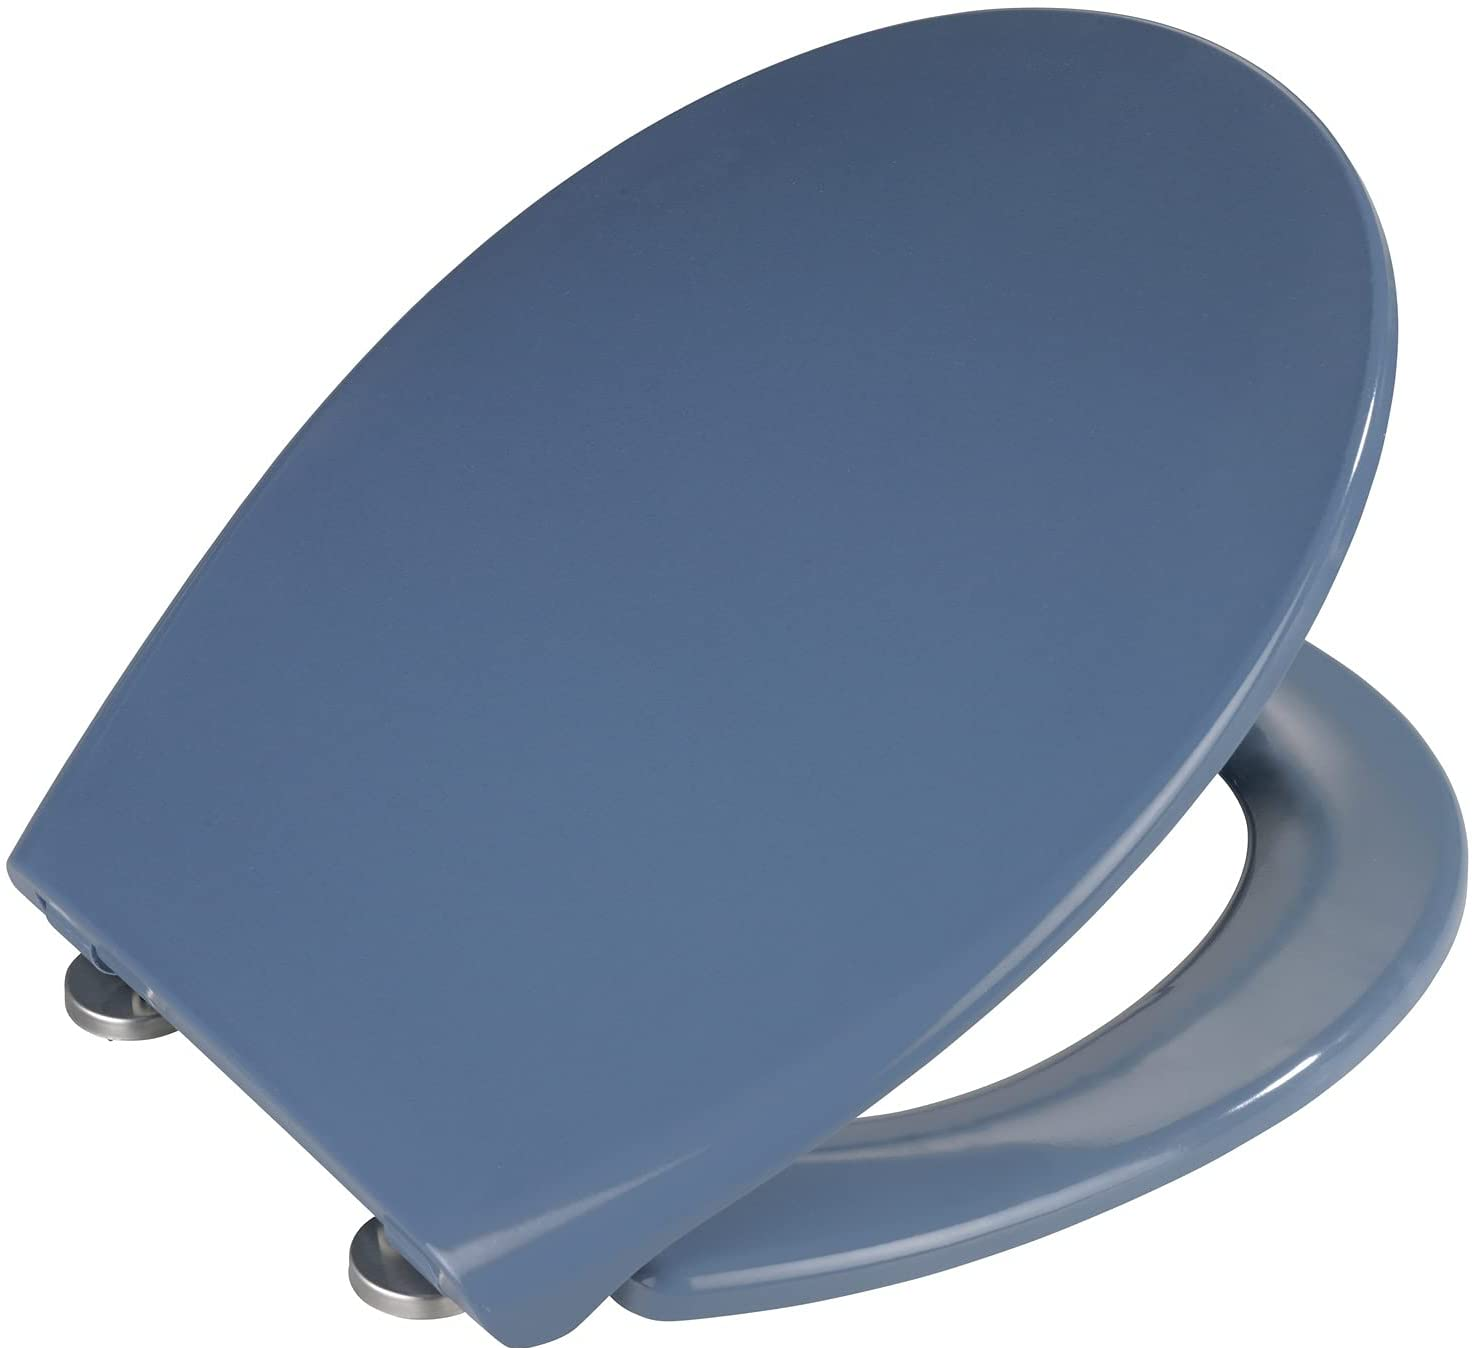 Premium WC-Sitz Samos Slate Blue - Antibakterieller Toiletten-Sitz mit Absenkautomatik, rostfreie Fix-Clip Hygiene Edelstahlbefestigung, Duroplast, 37.5 x 44.5 cm, Dunkelblau